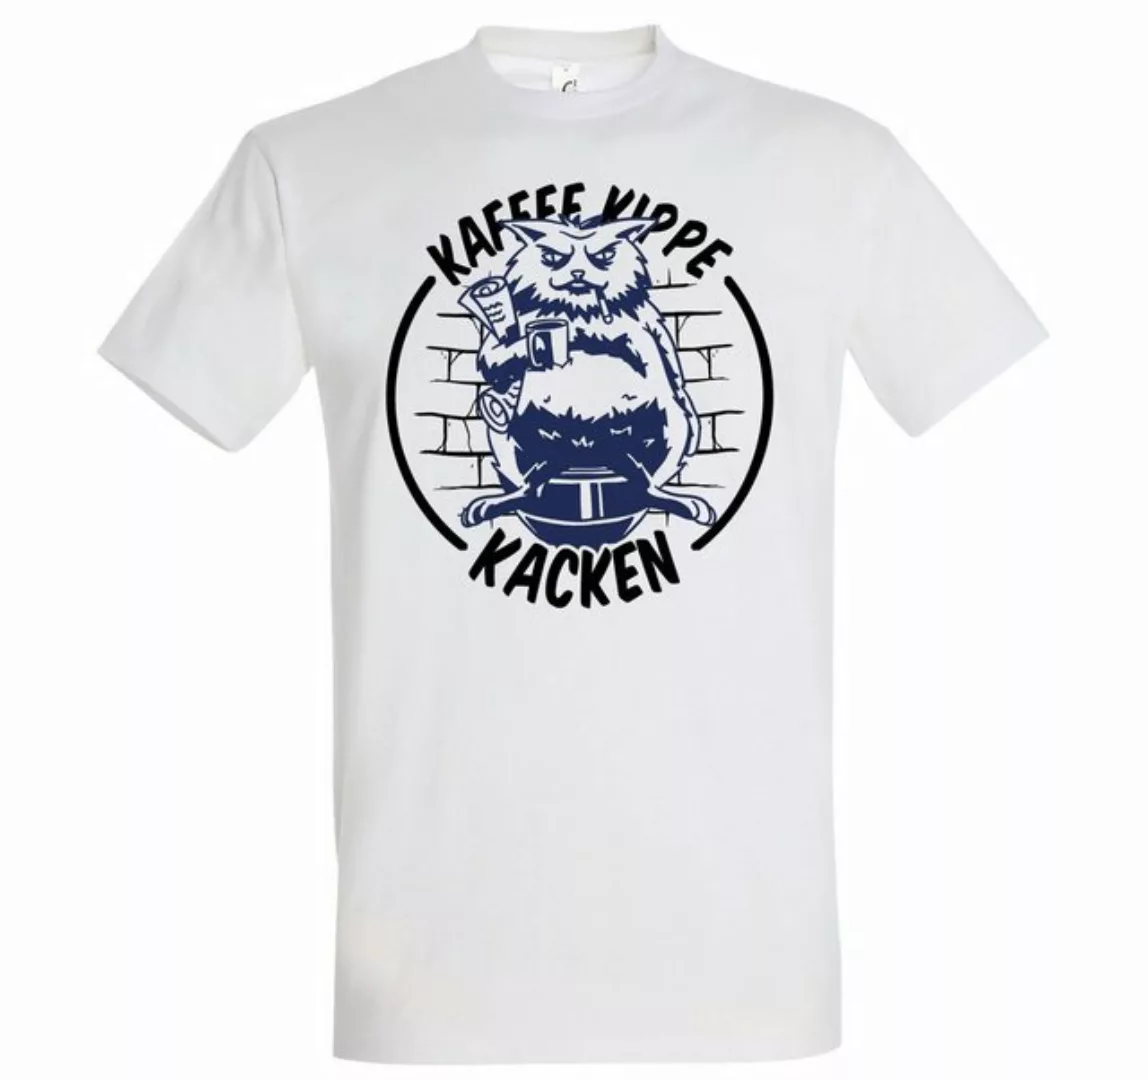 Youth Designz Print-Shirt "Kaffee Kippe K*cken" Herren T-Shirt mit lustigem günstig online kaufen